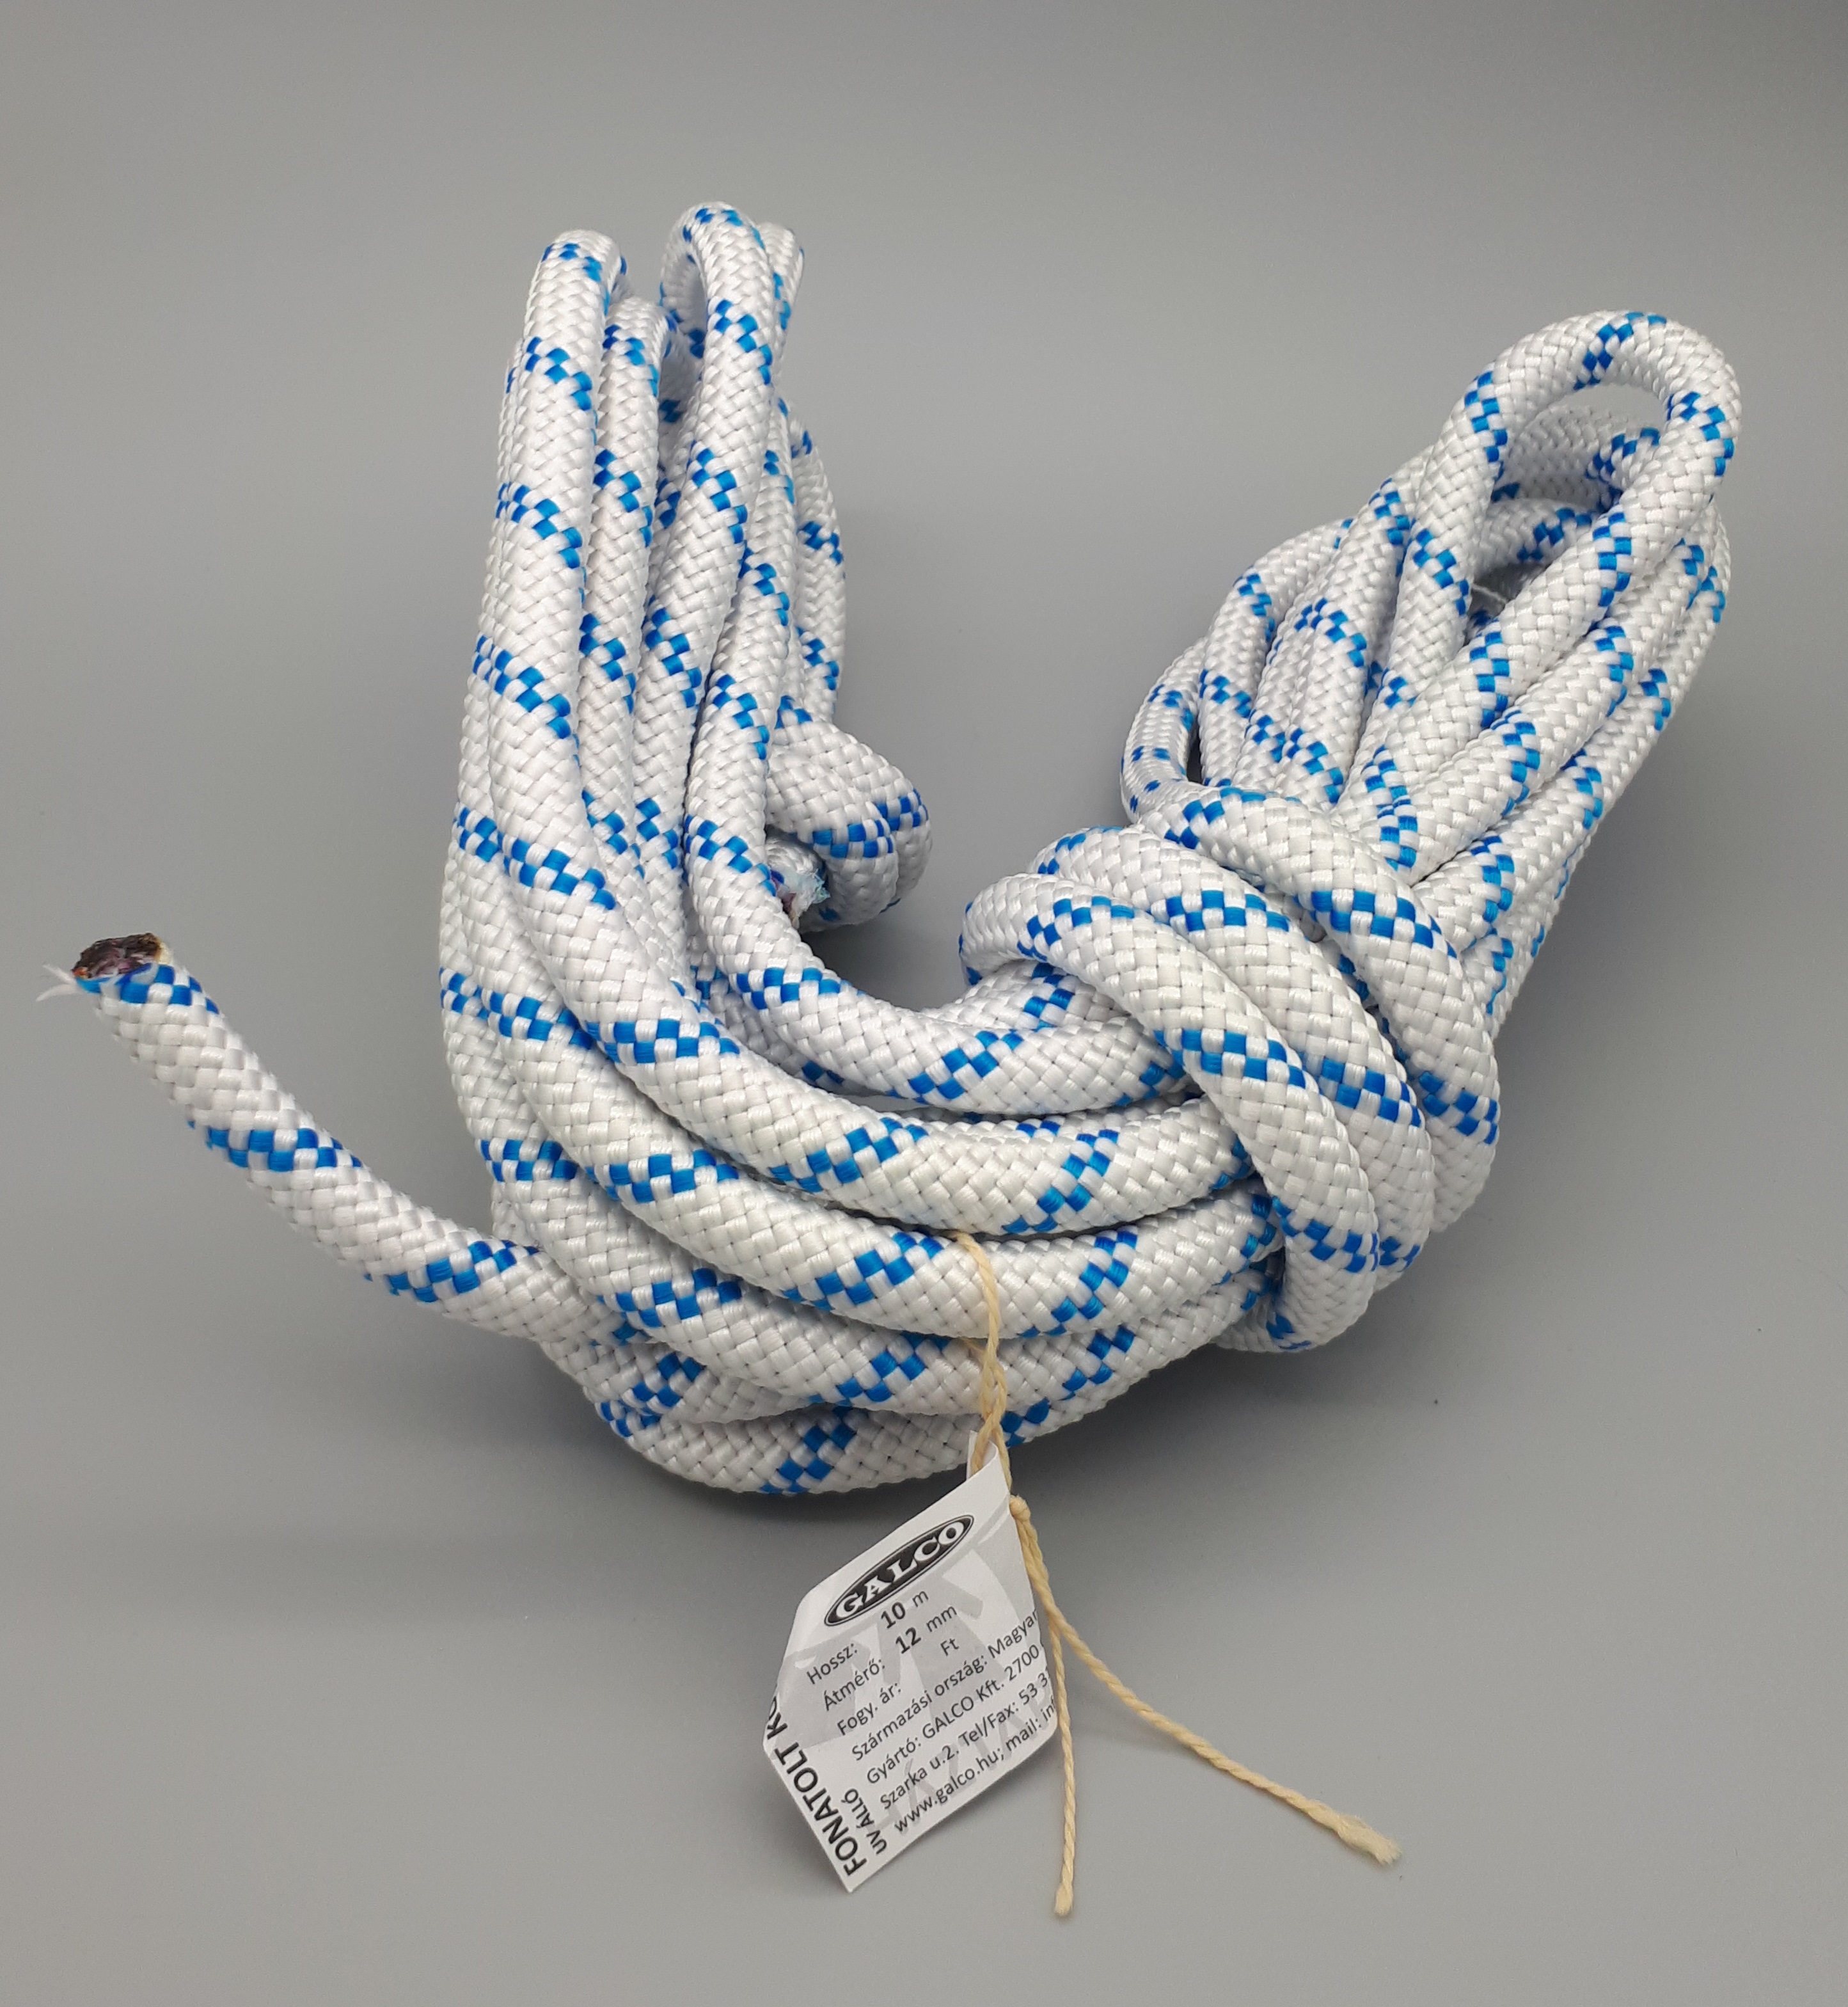 Cut rope 12 mm diameter/20 m